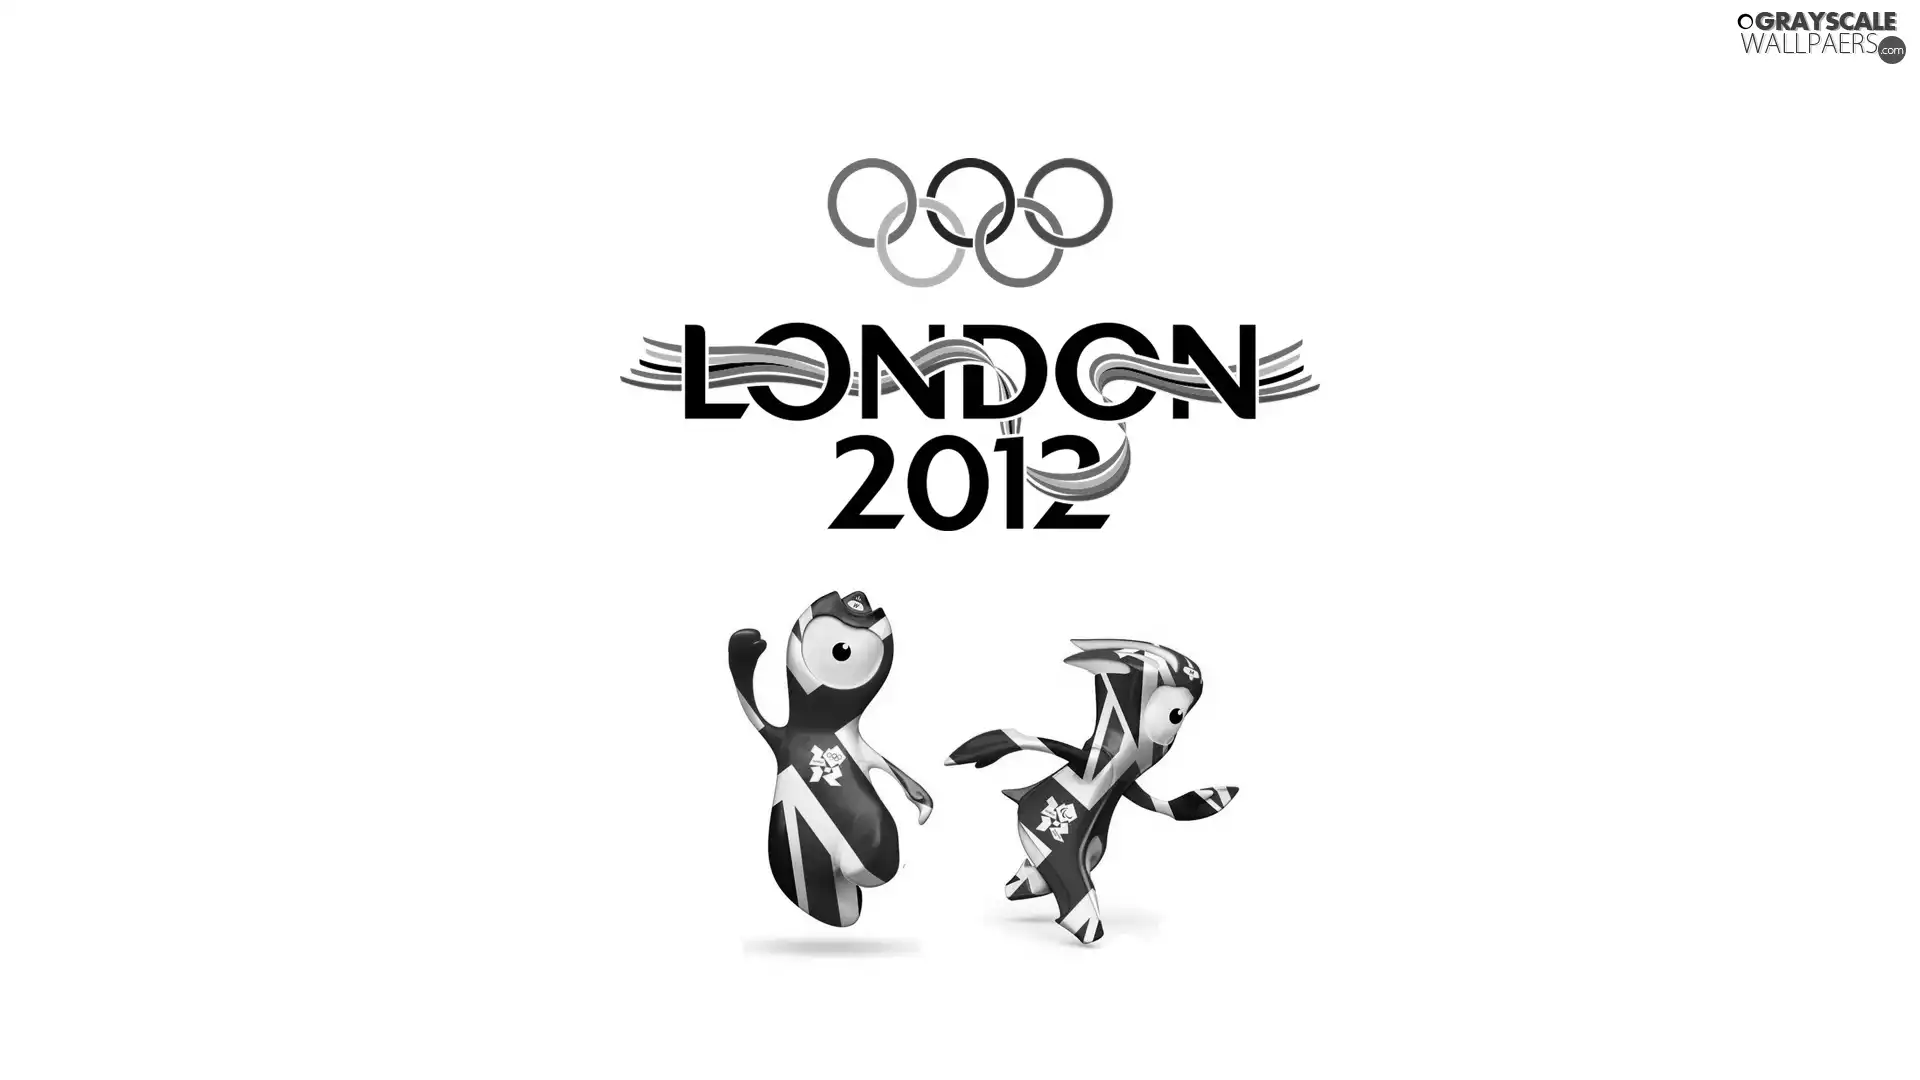 London 2012, olympiad